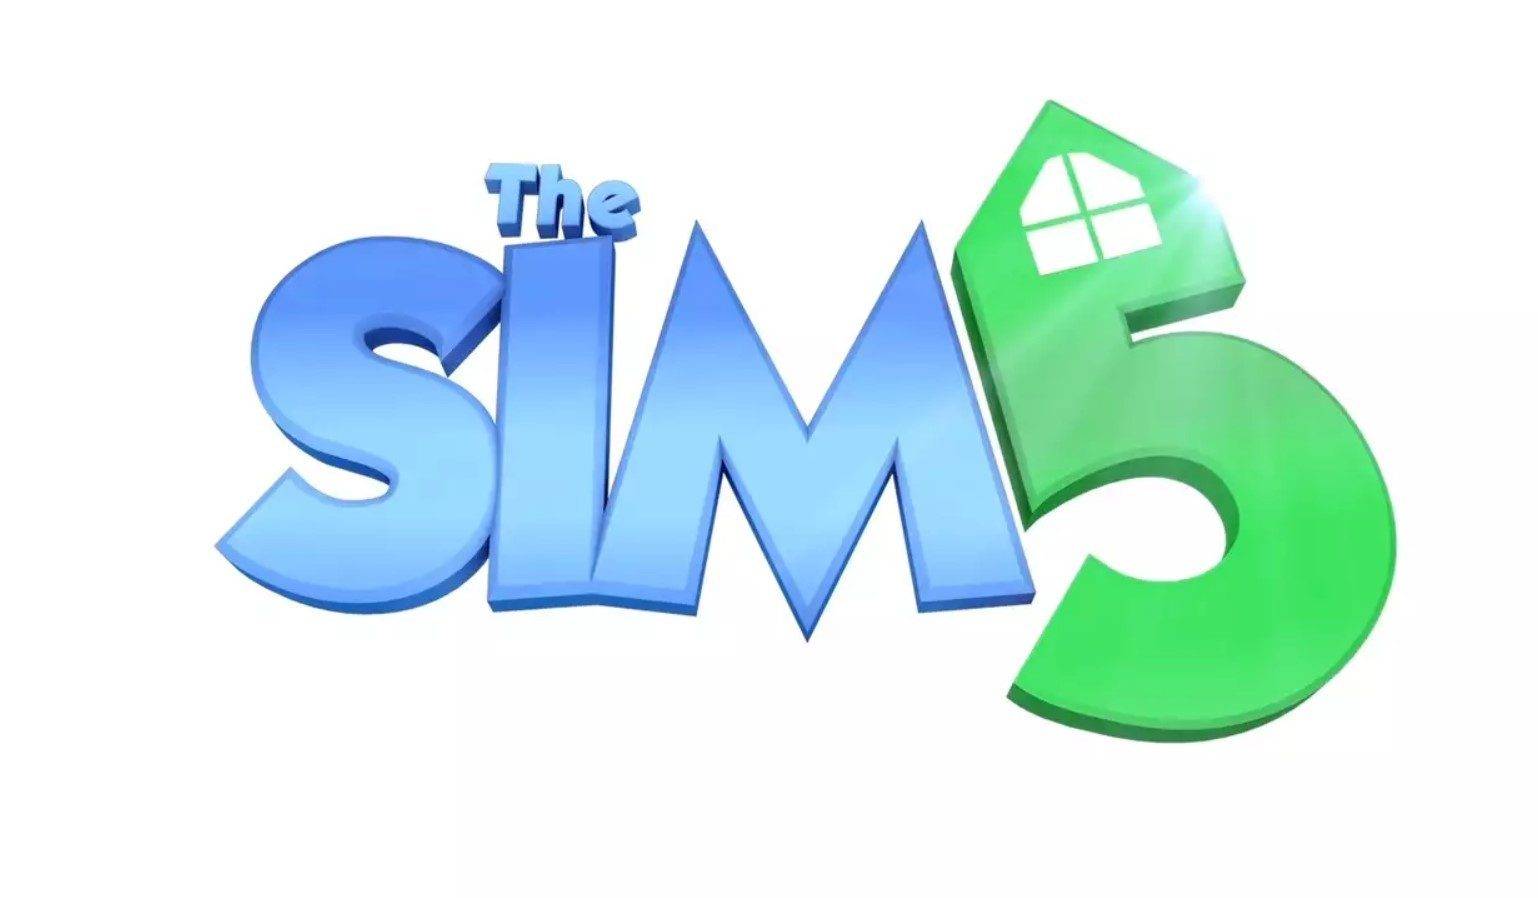 Notícias, rumores e data de lançamento de The Sims 5? A Electronic Arts e a Maxis estão no comando do próximo The Sims que deve ser anunciado em breve.